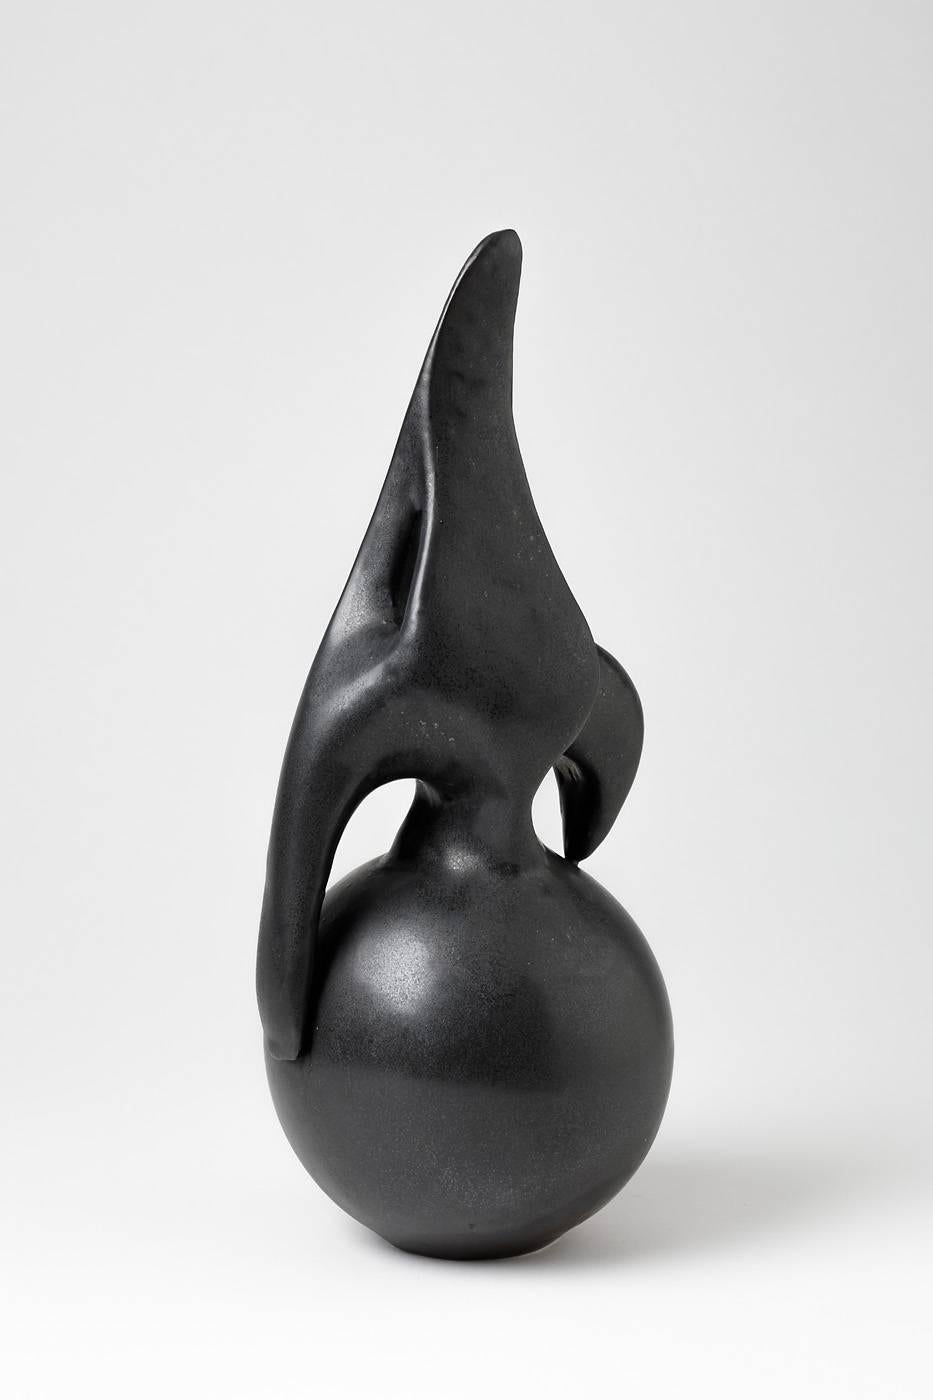 Elegante abstrakte Skulptur von Tim Orr.

Porzellanskulptur mit schöner schwarzer Keramikglasur.

Signiert unter dem Sockel, um 1970.